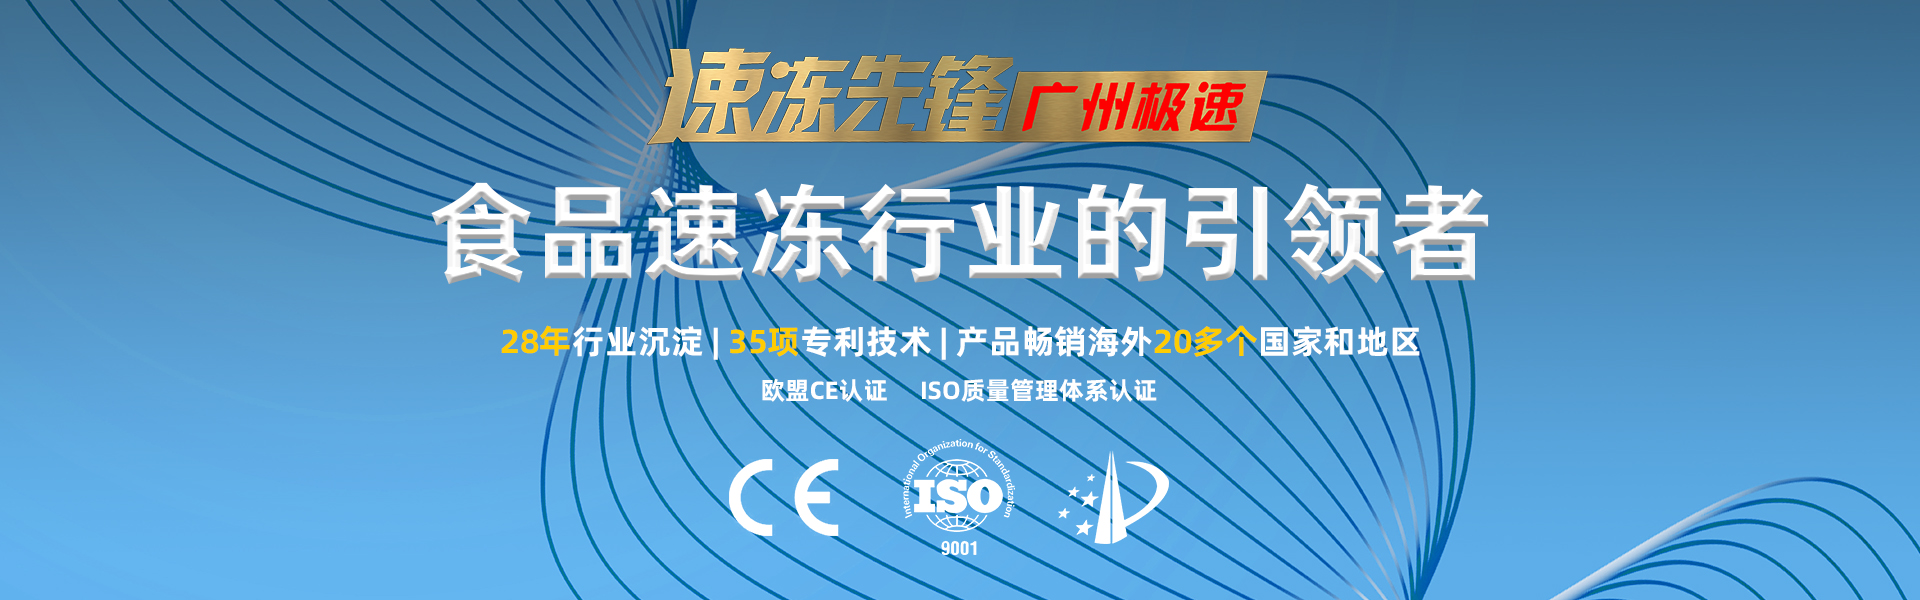 广州 海鲜液氮速冻机定制 海鲜隧道式液氮速冻机 海参液氮速冻机设备 较速制冷